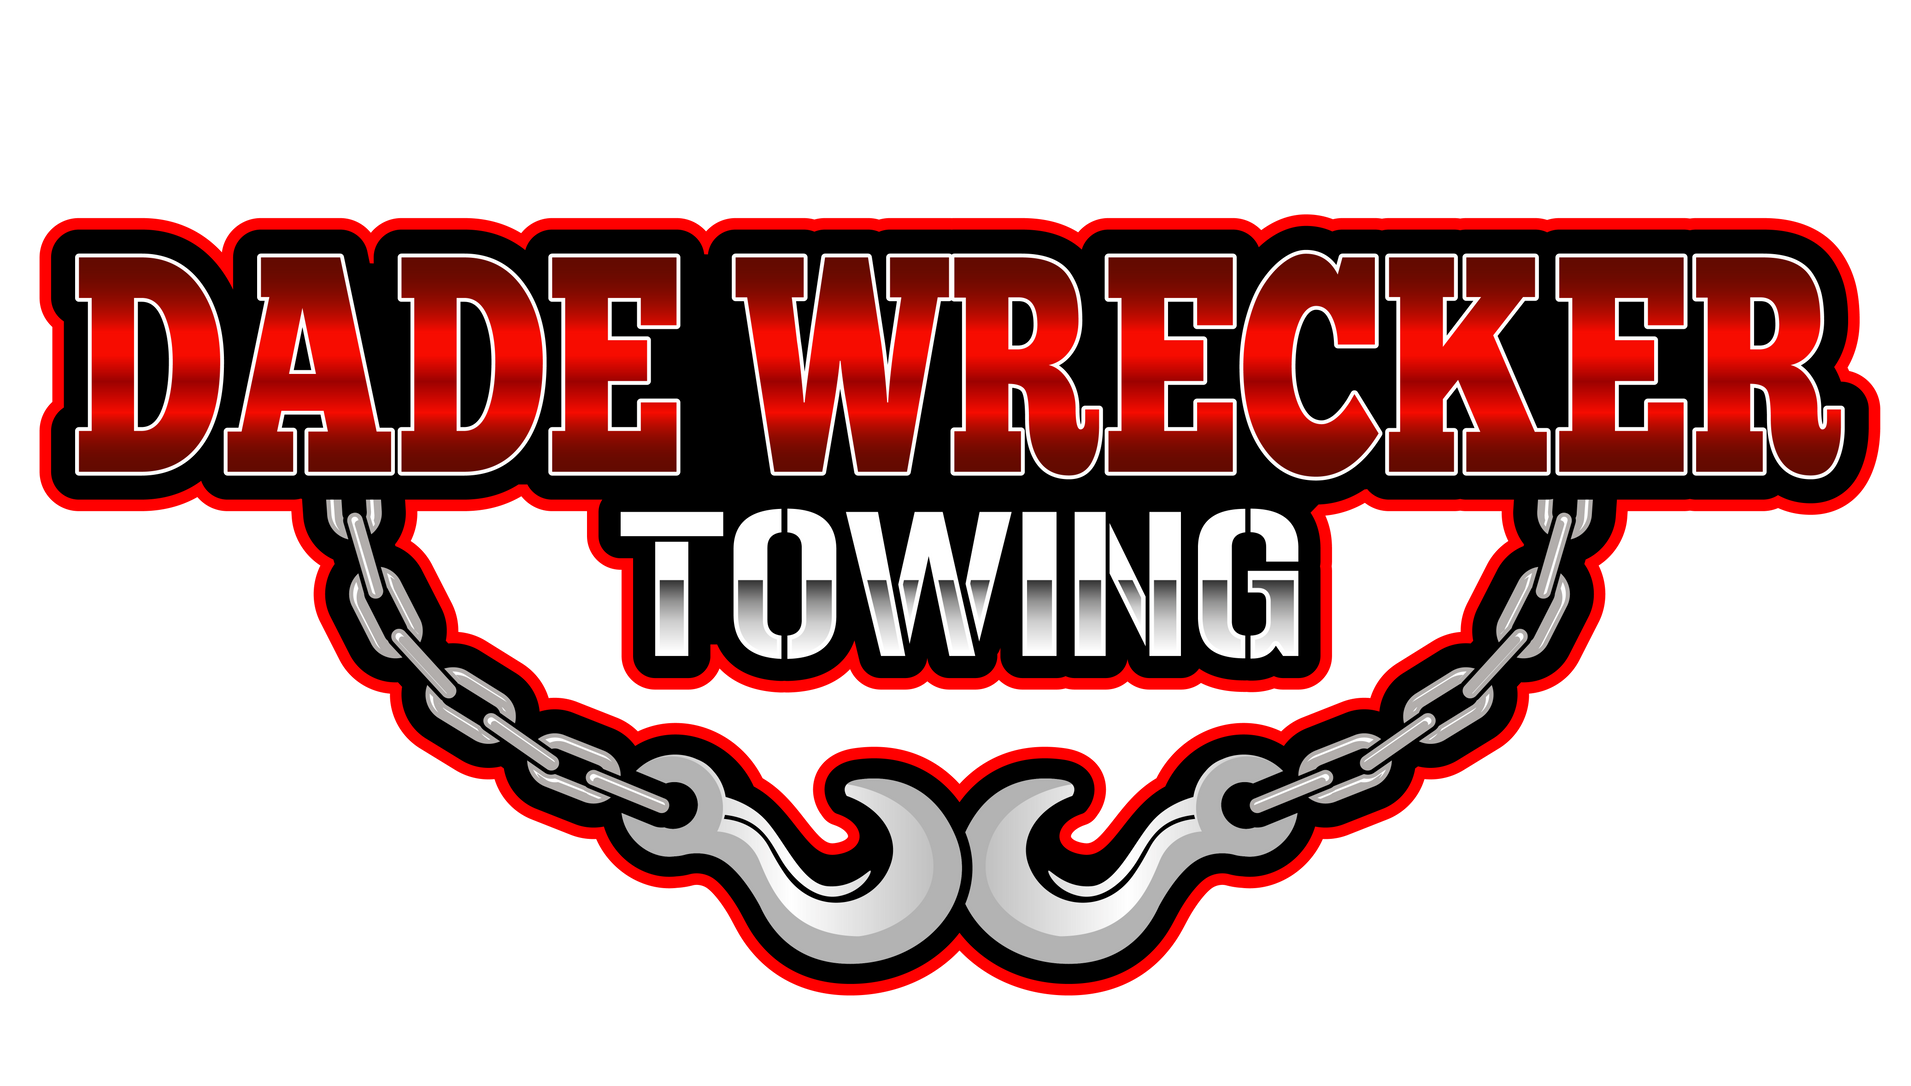 Miami-Dade Towing & Wrecker Service